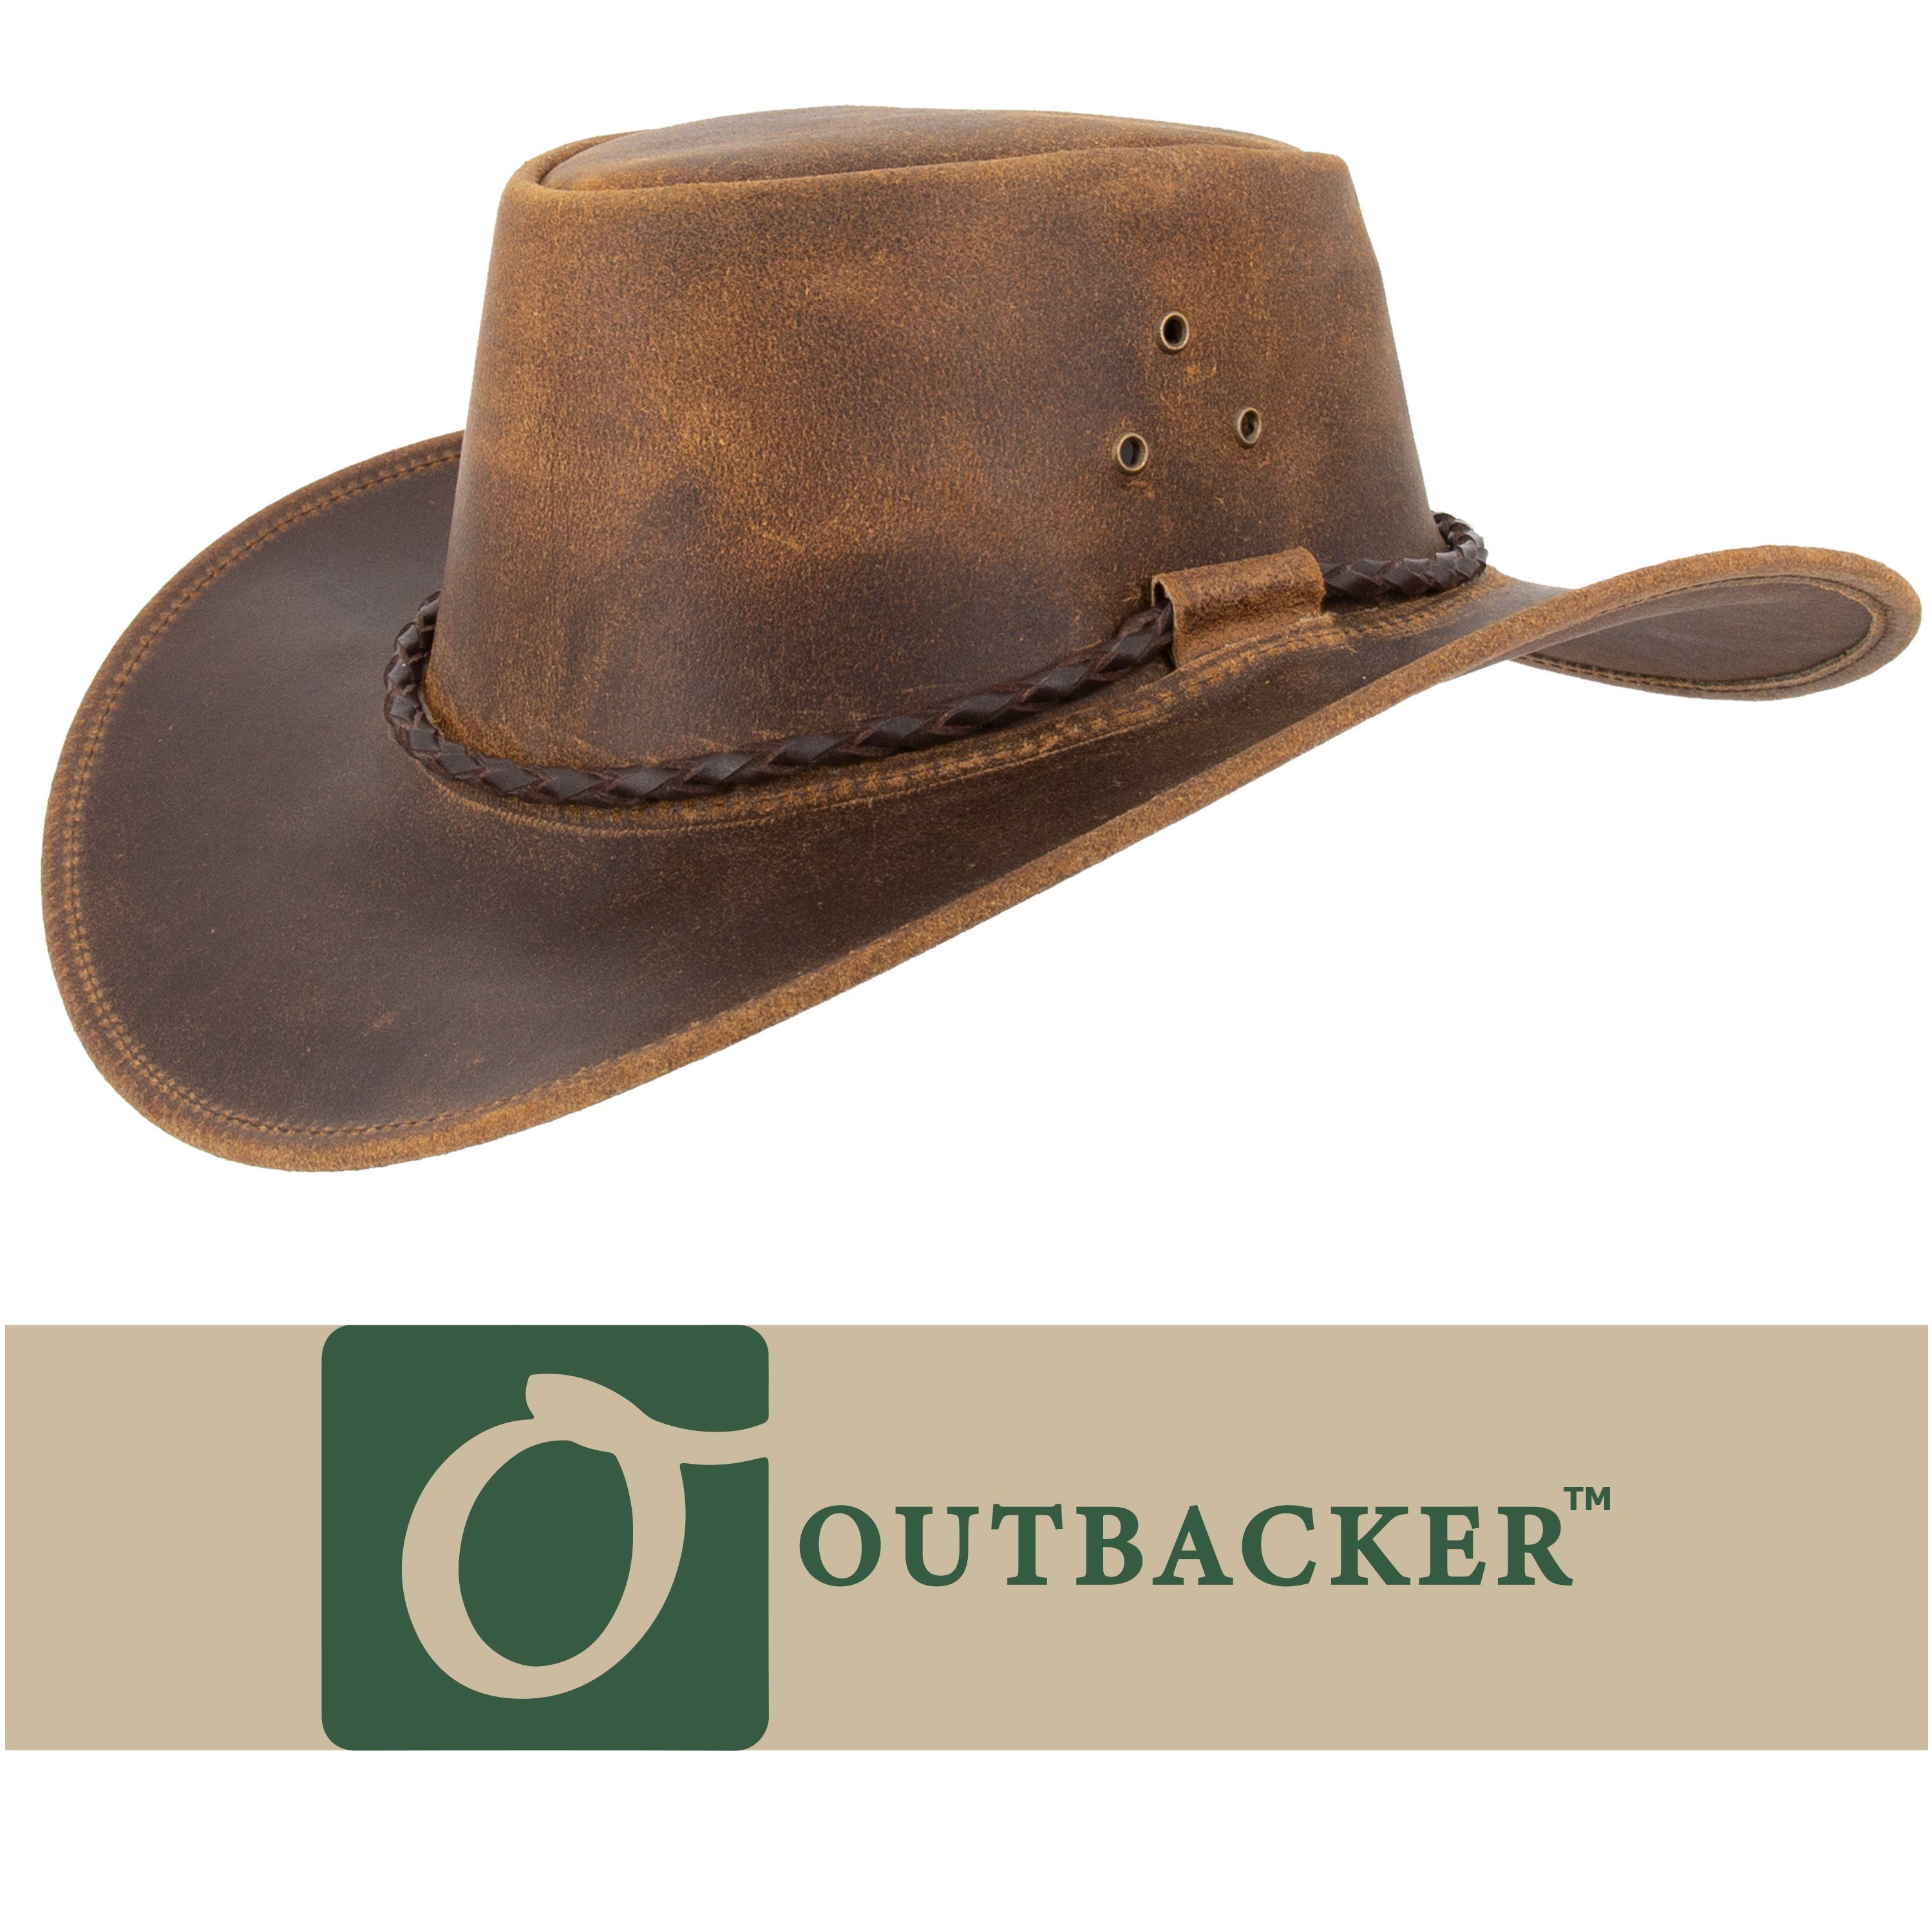 Outdoor mit Cowboyhut Outbacker Style allwettertauglich Kinnband Australien Lederhut